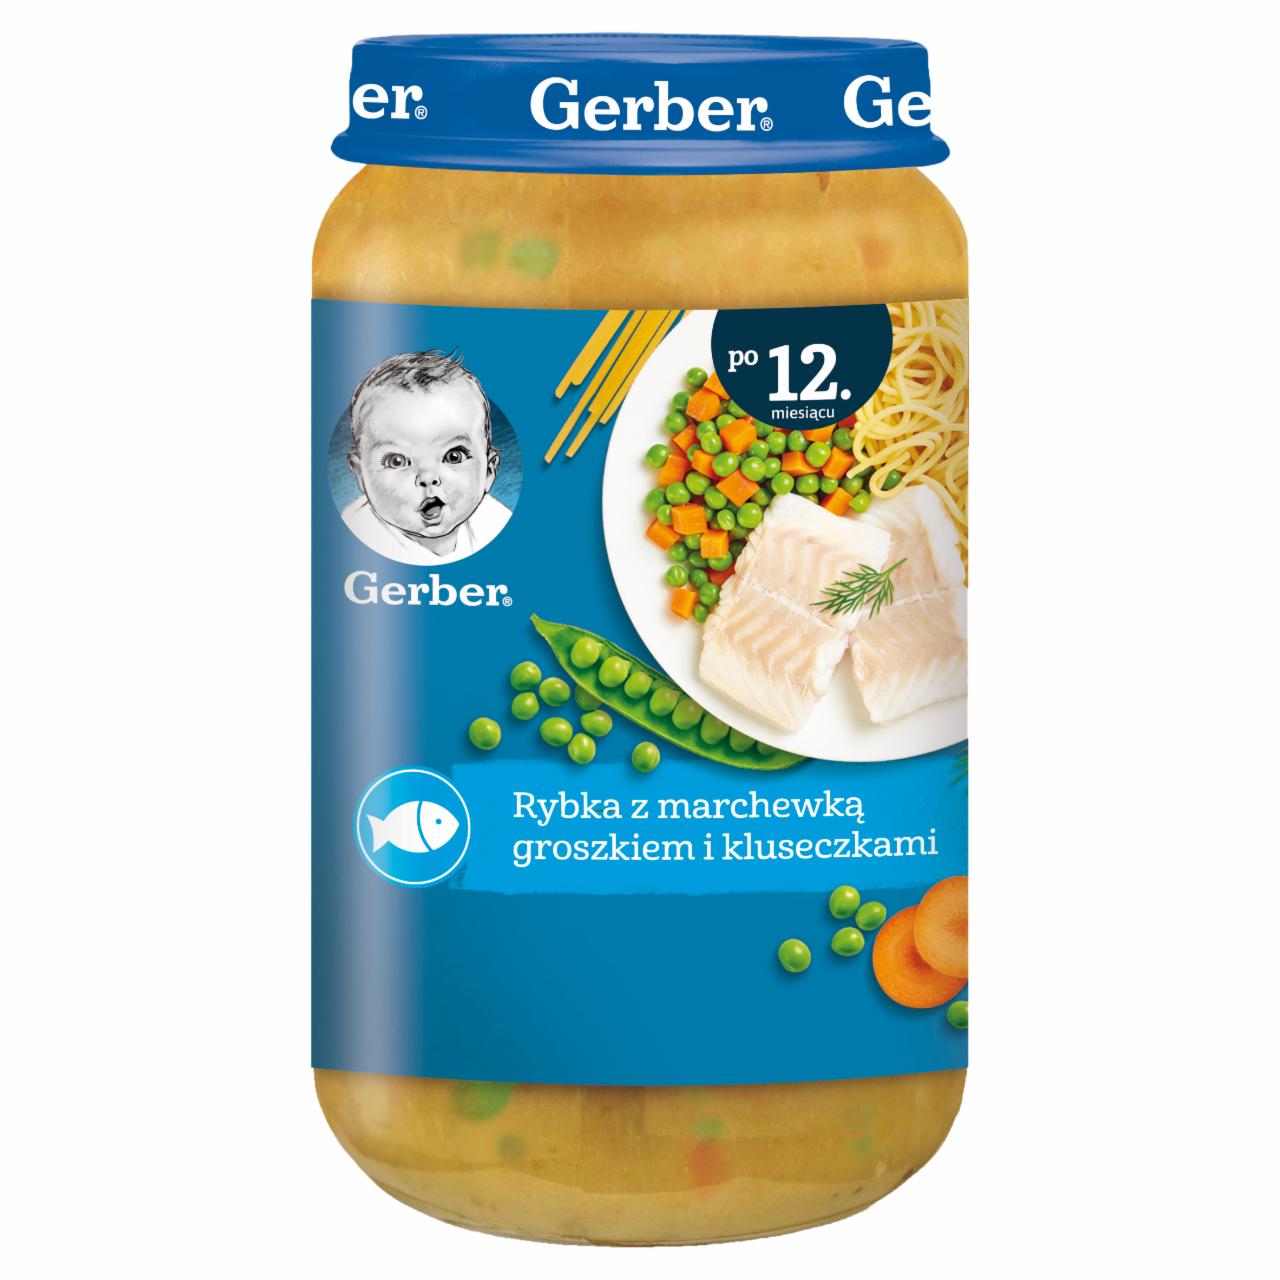 Zdjęcia - Gerber Rybka z marchewką groszkiem i kluseczkami dla dzieci po 12. miesiącu 250 g